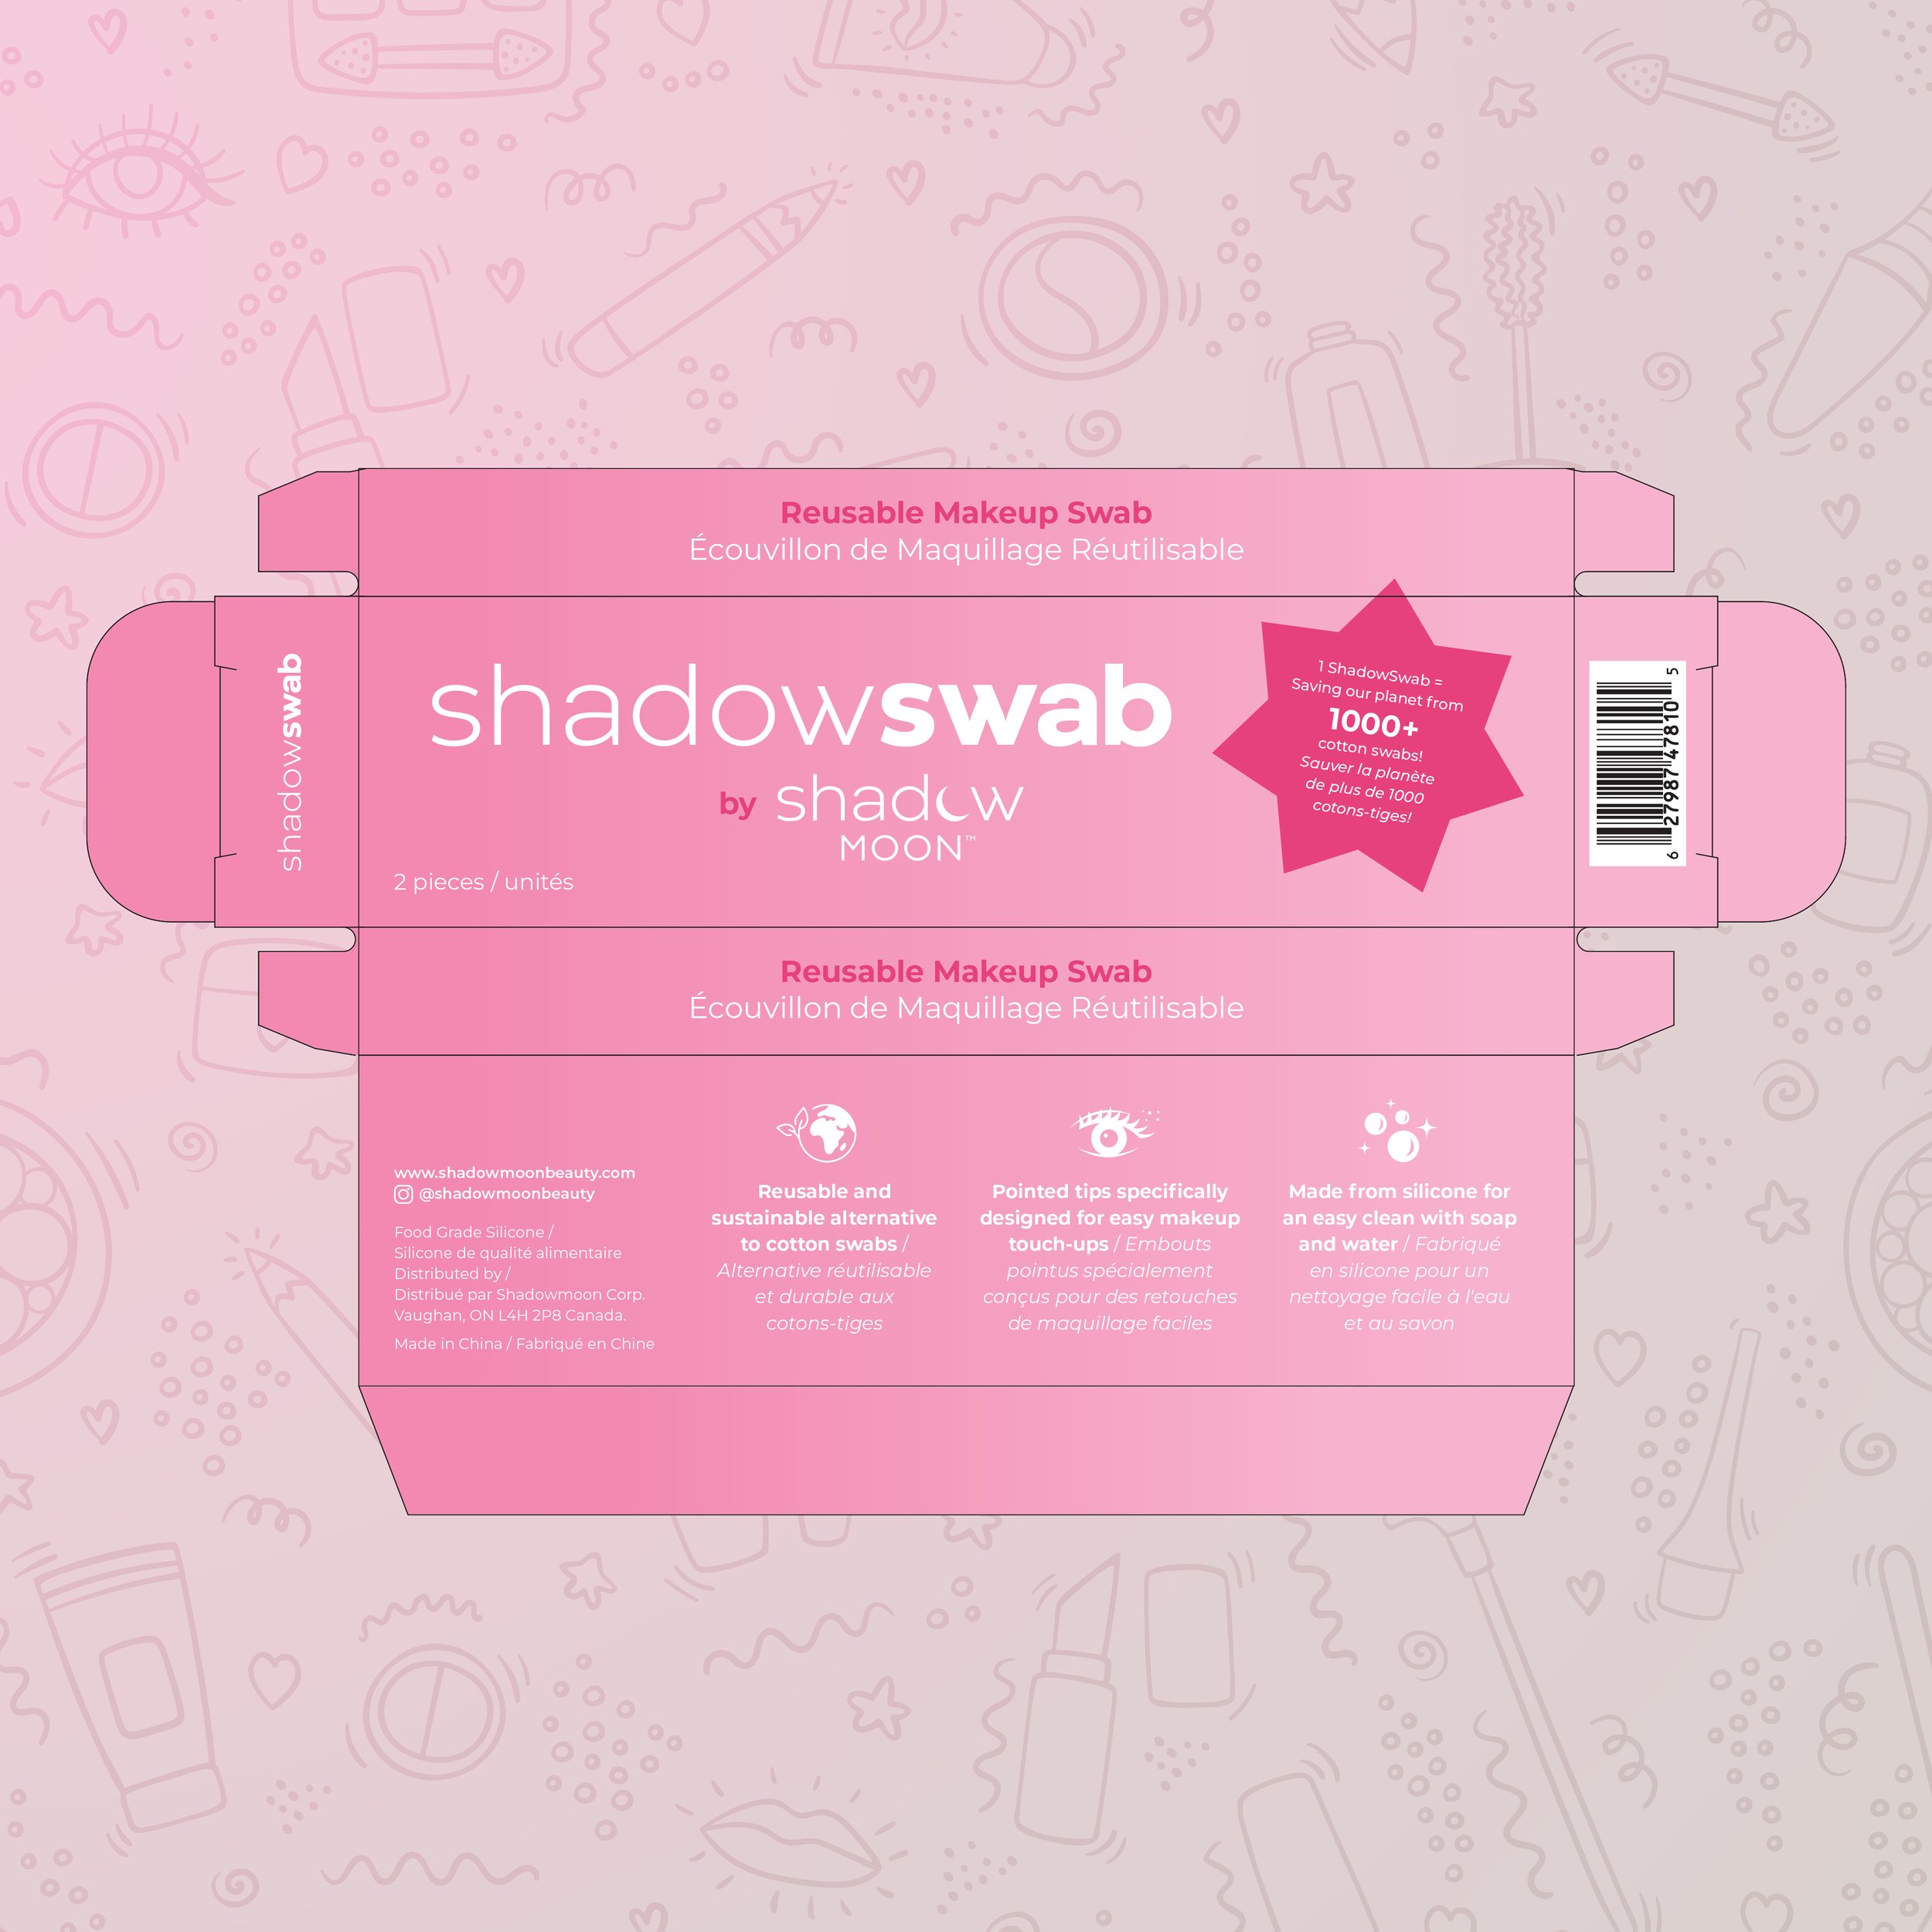 I_AM-Designs_ShadowSwab_Packaging_Design.jpg